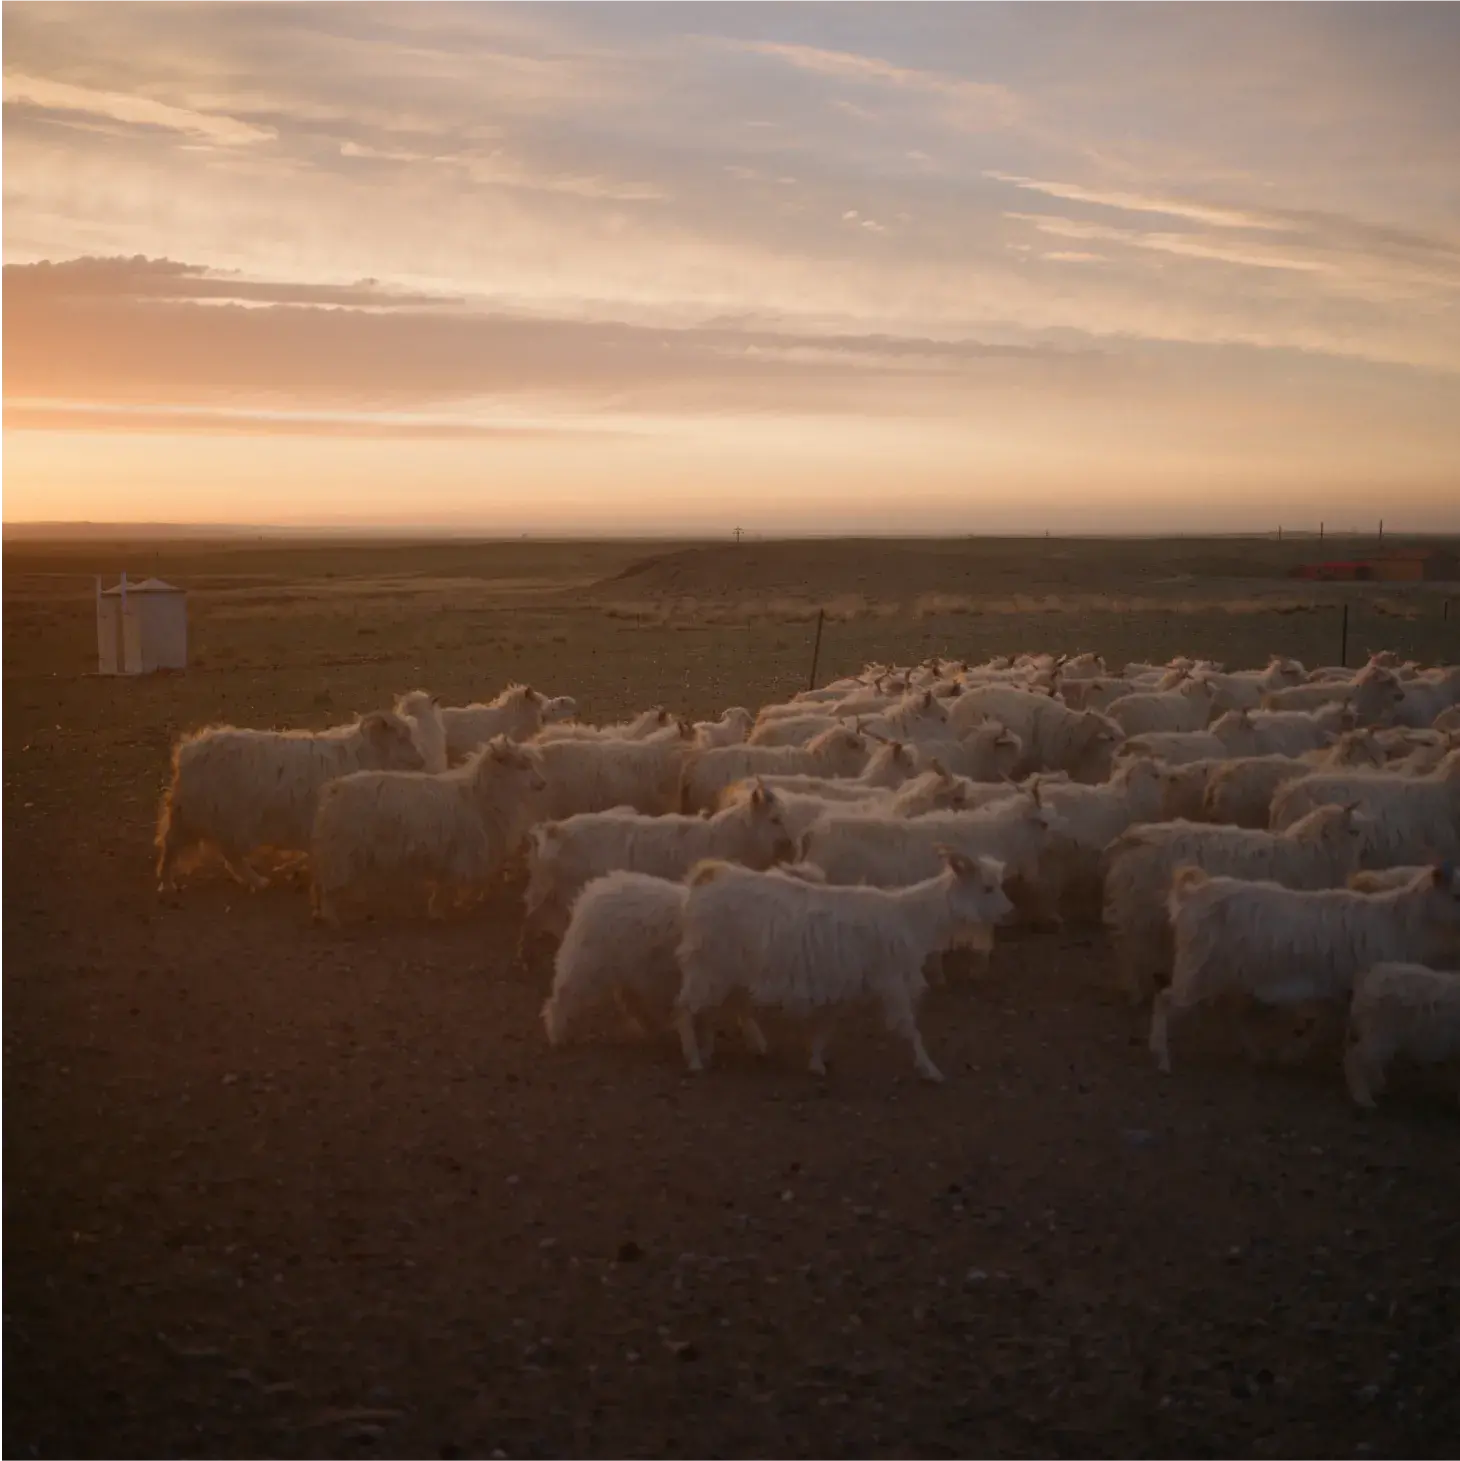 goats herding in the sunset